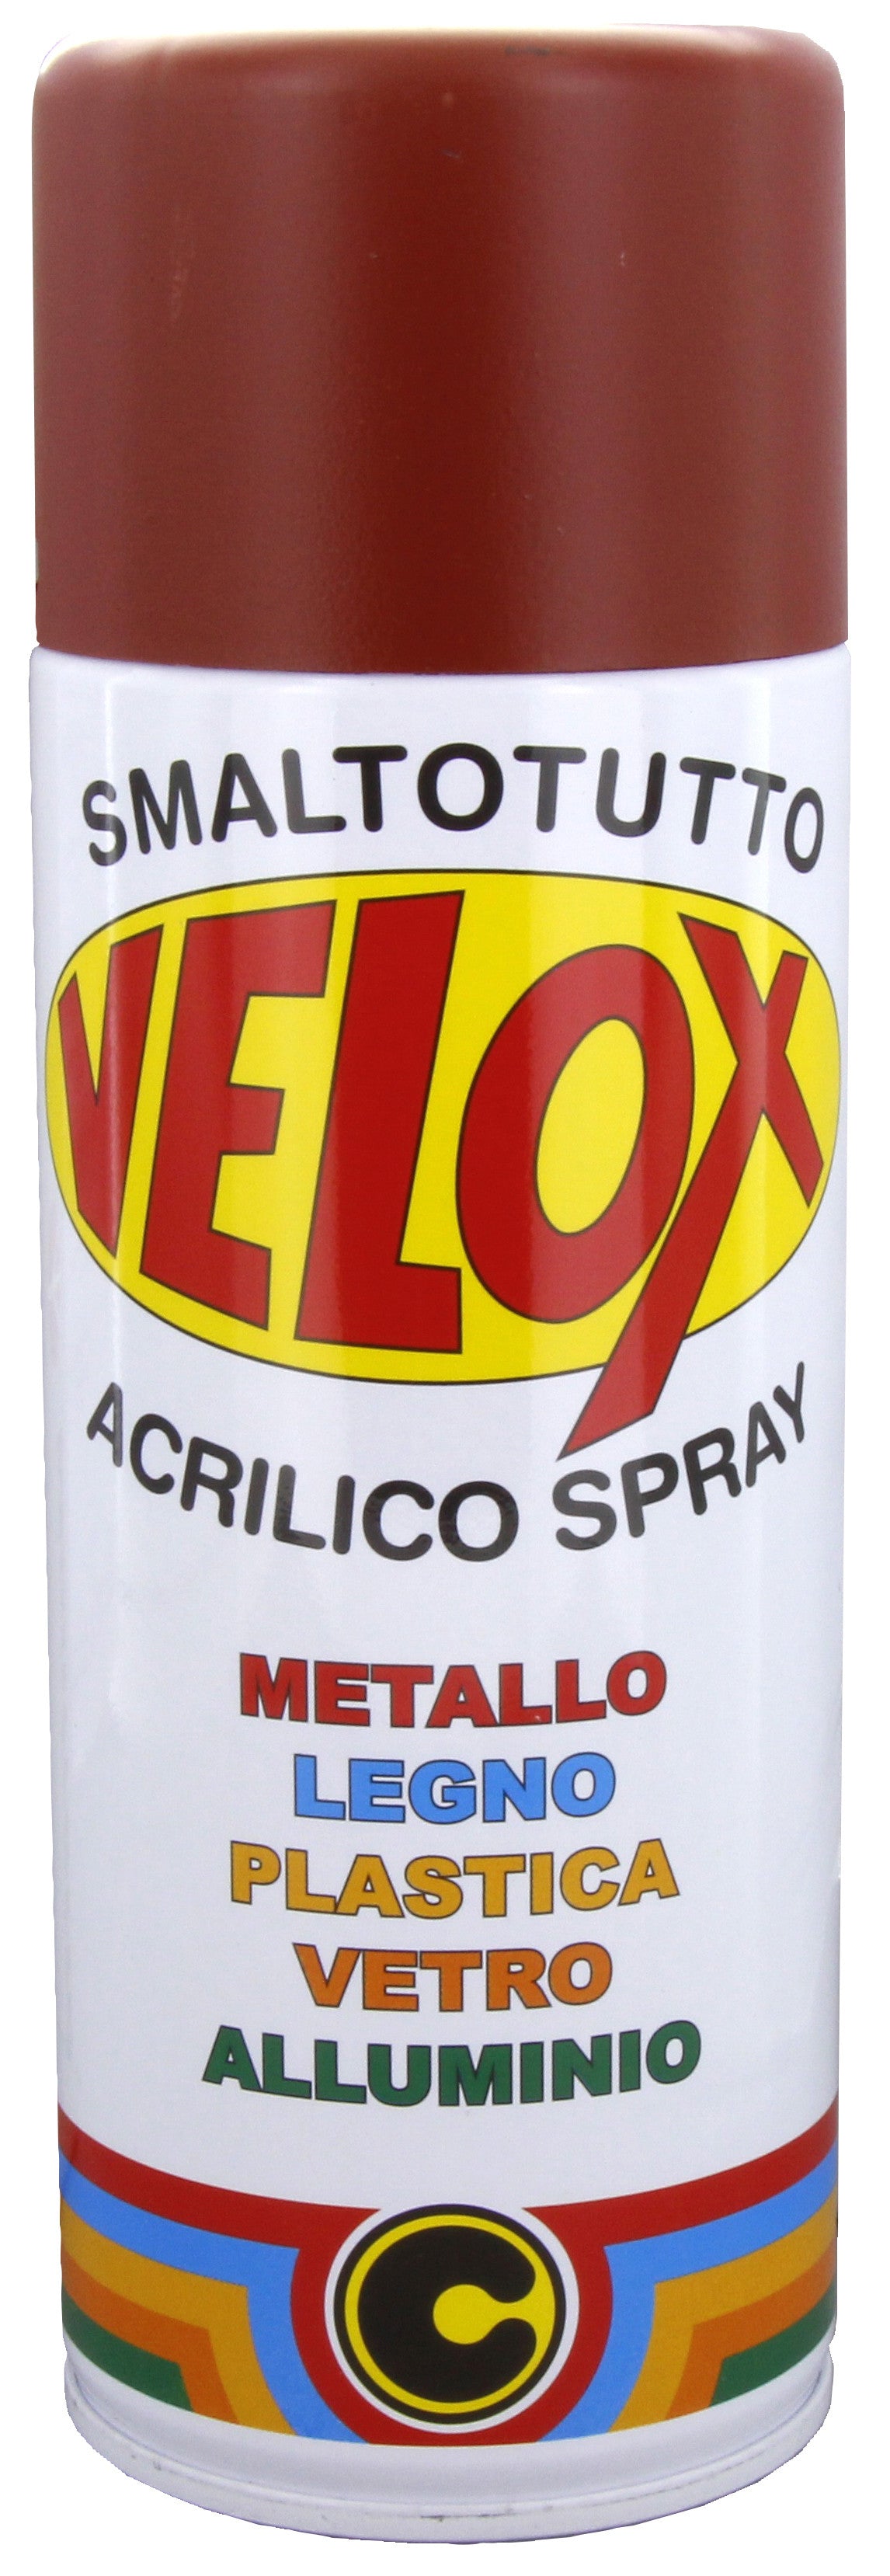 Velox spray antiruggine rosso ral 3009 ITAL G.E.T.E.